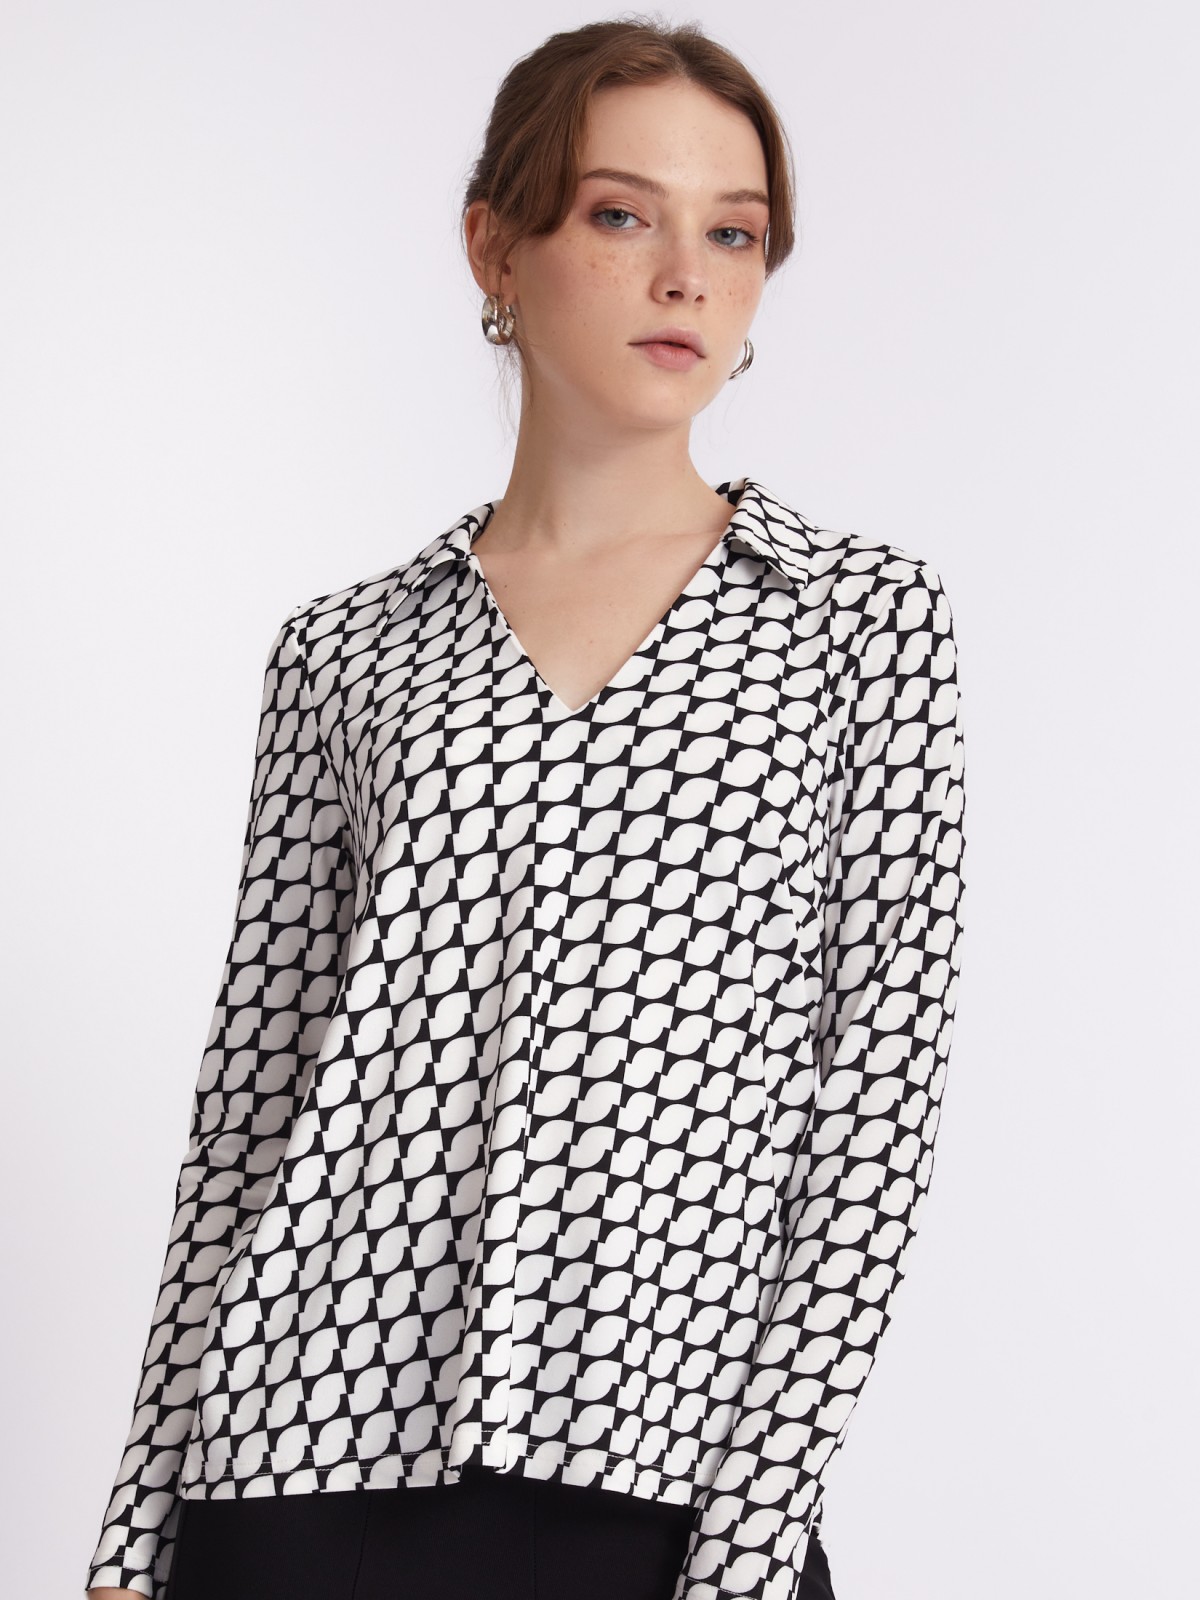 Трикотажная блузка-туника с принтом zolla 223311159201, цвет молоко, размер L - фото 3